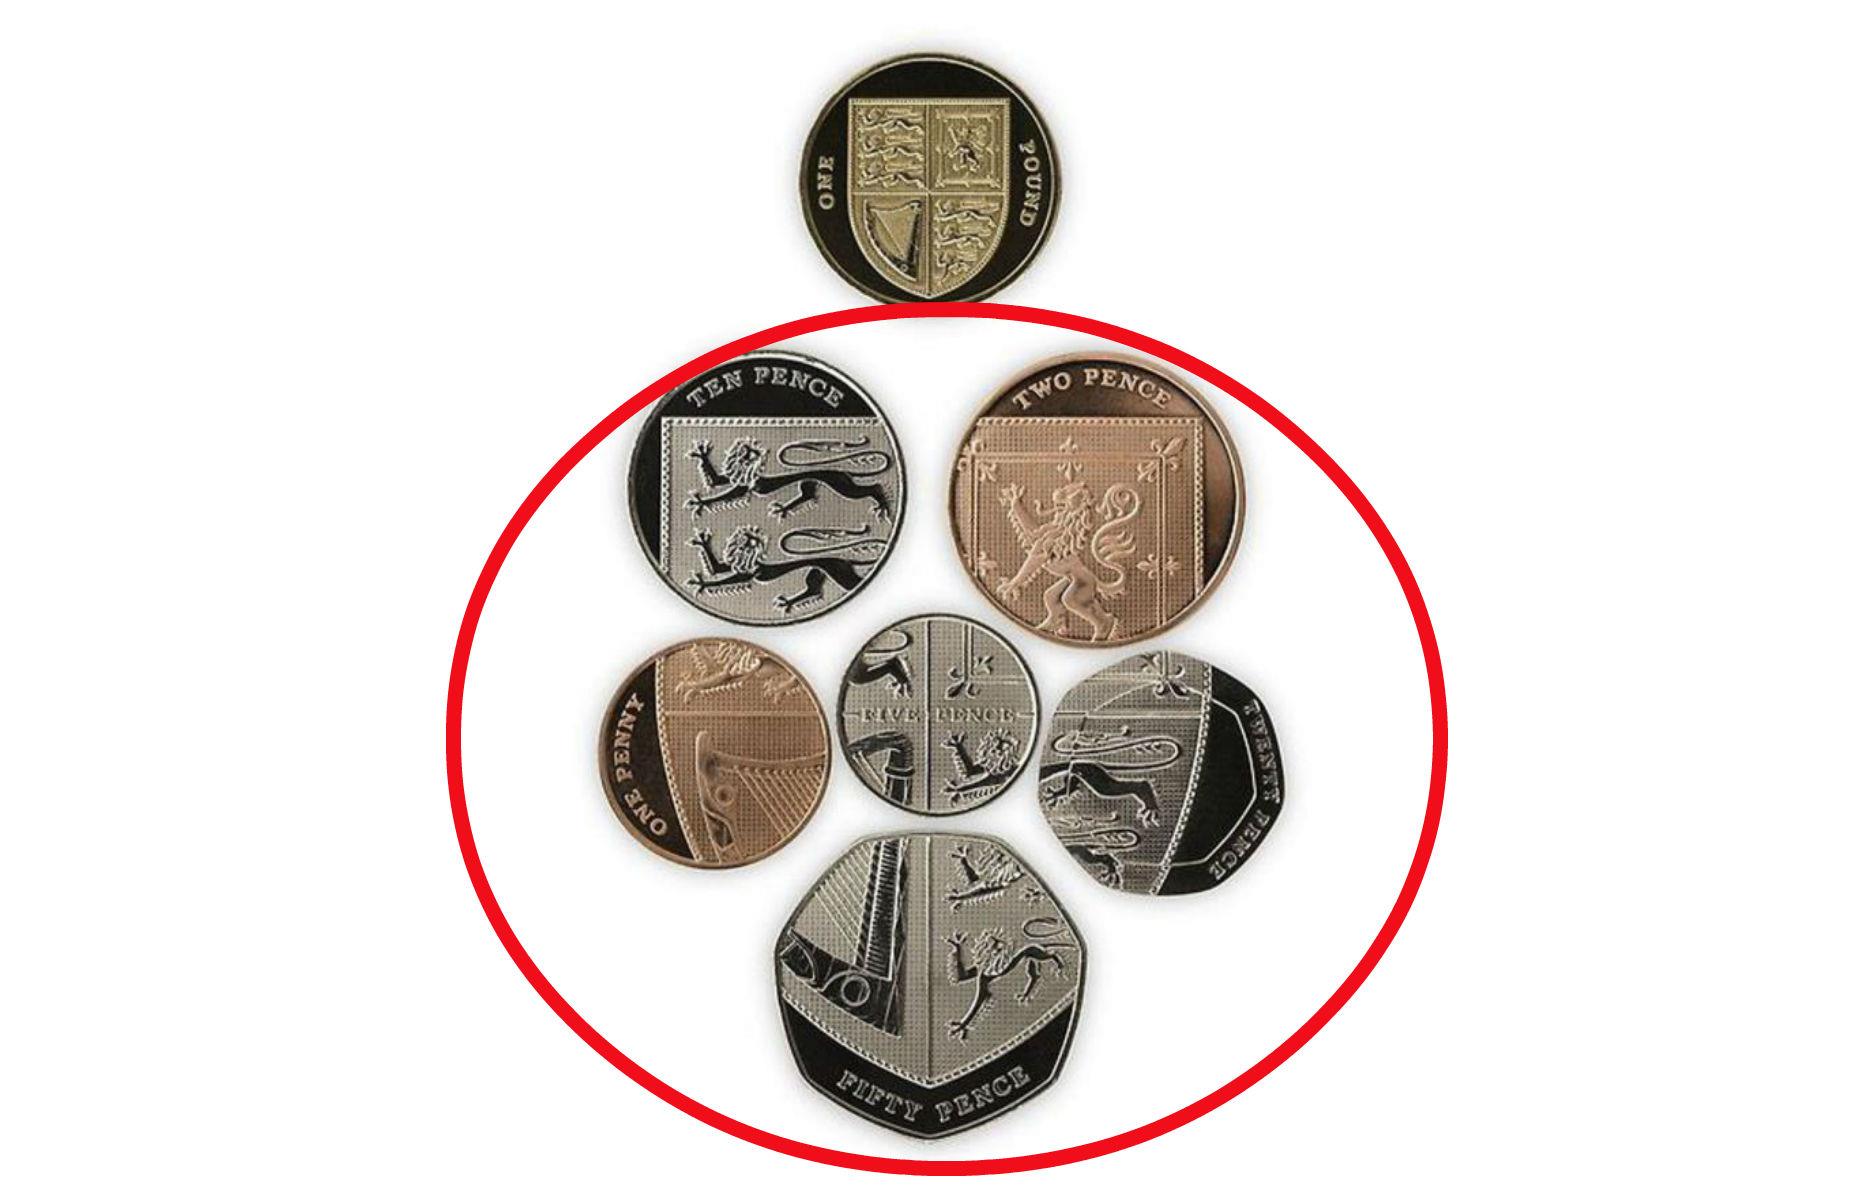 British coins: shield design